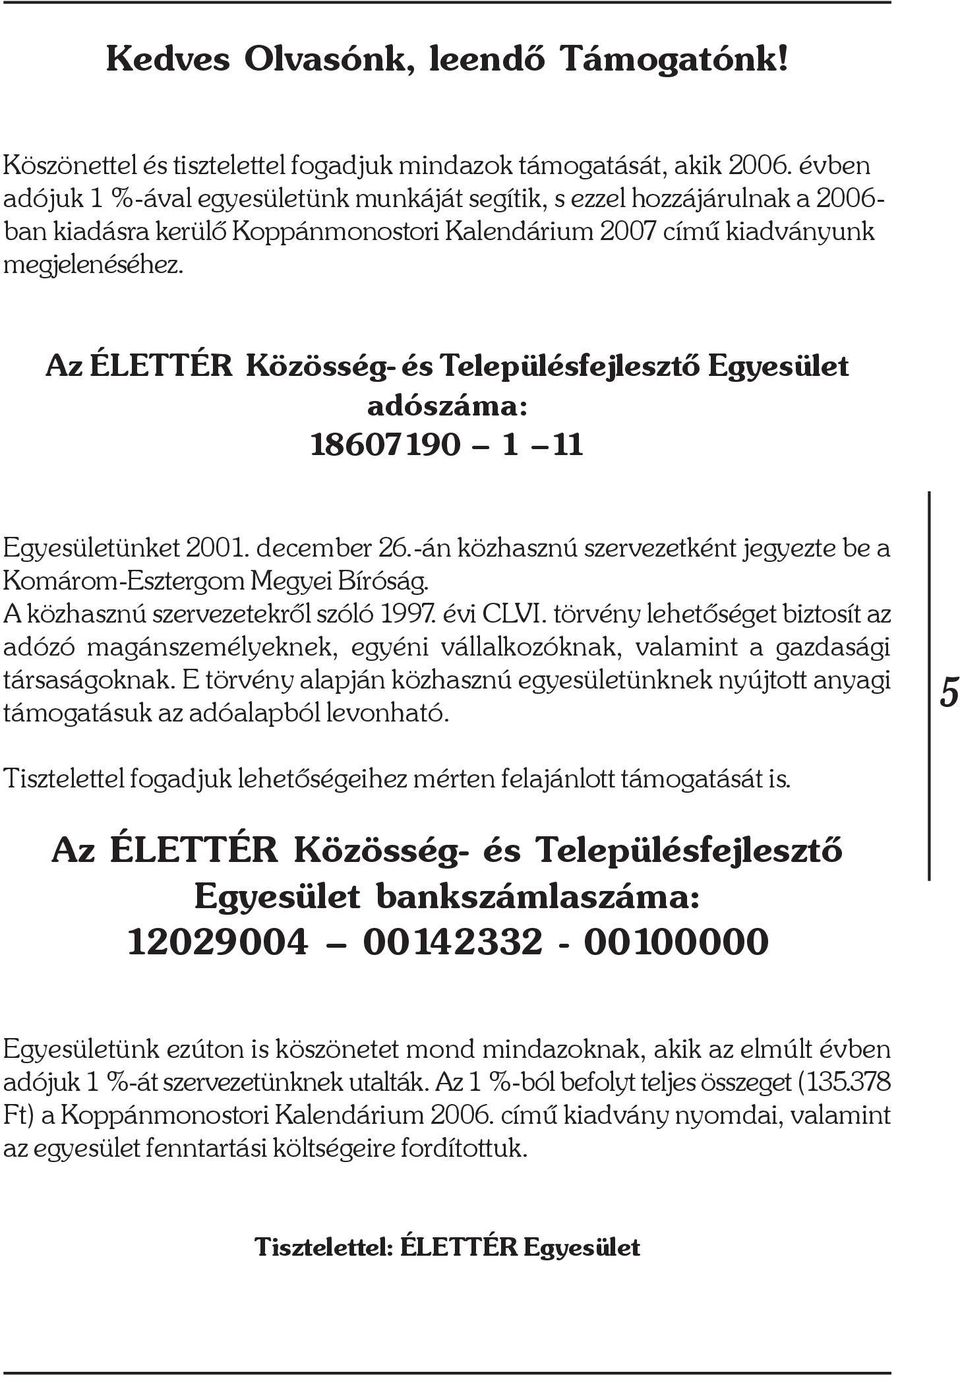 Az ÉLETTÉR Közösség- és Településfejlesztõ Egyesület adószáma: 18607190 1 11 Egyesületünket 2001. december 26.-án közhasznú szervezetként jegyezte be a Komárom-Esztergom Megyei Bíróság.